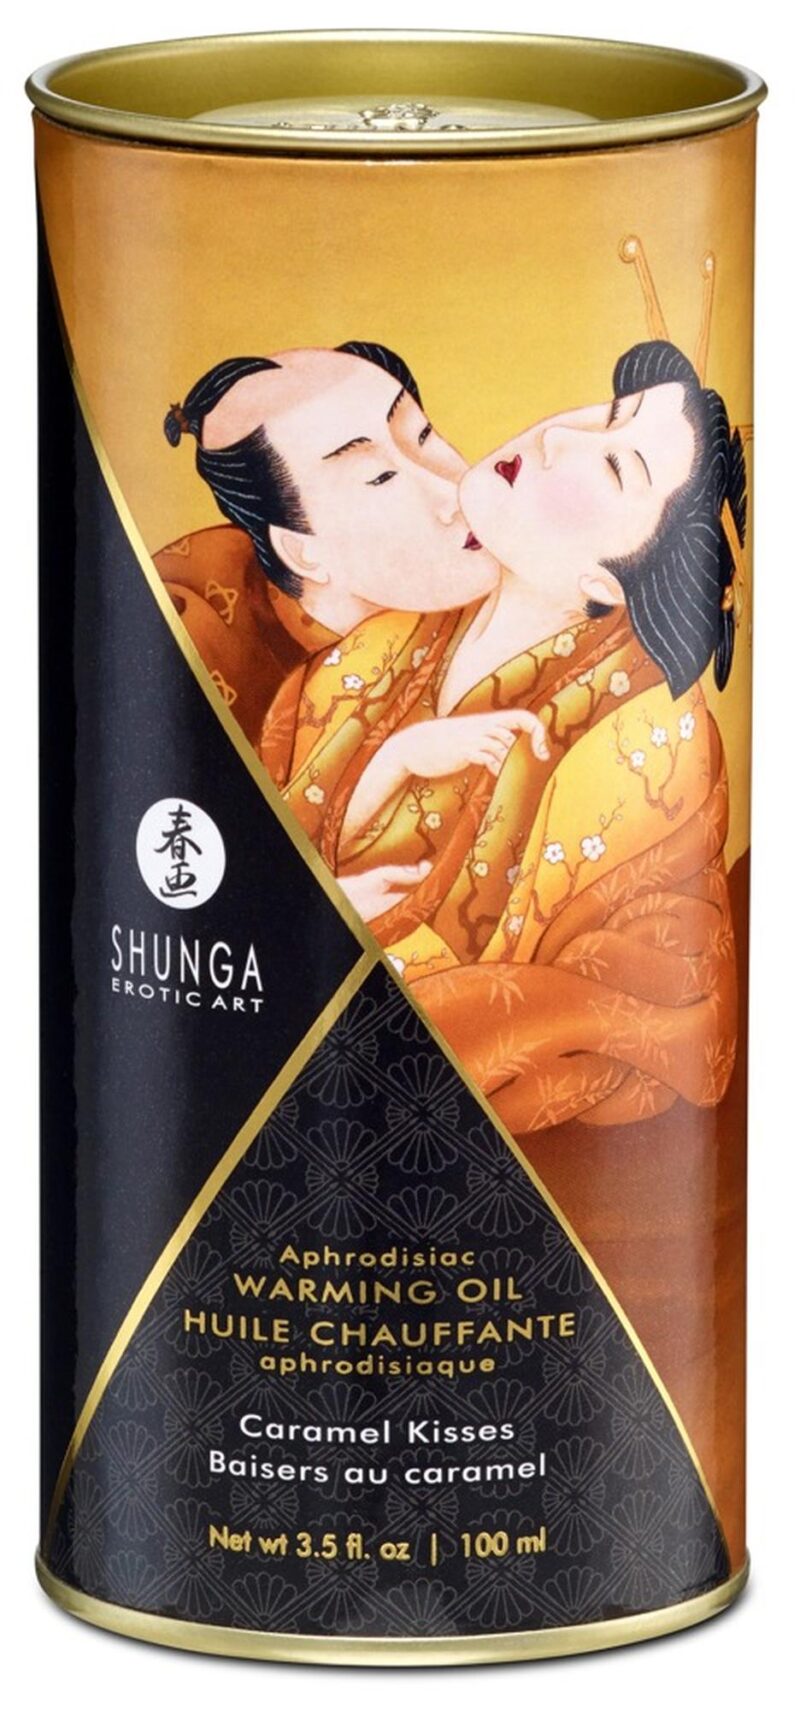 Shunga Warming Oil Caramel Kisses podnieca